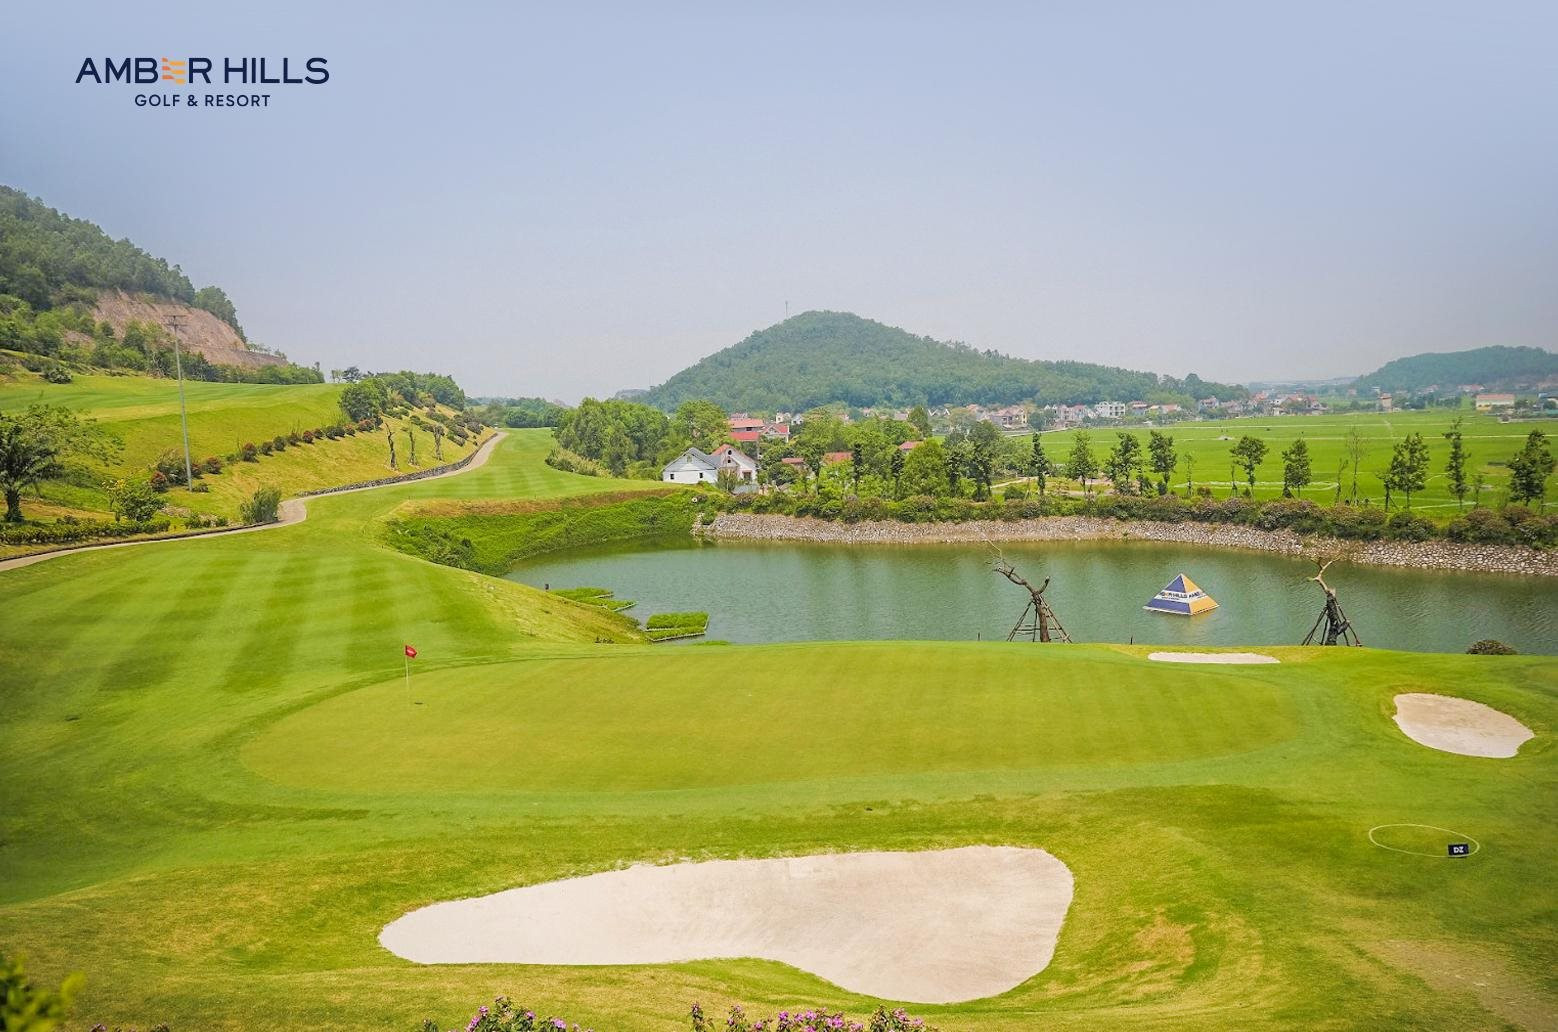 K.J.Choi - &quot;Huyền thoại golf châu Á&quot; về Việt Nam tư vấn thiết kế cho sân golf tại Bắc Giang - Ảnh 1.